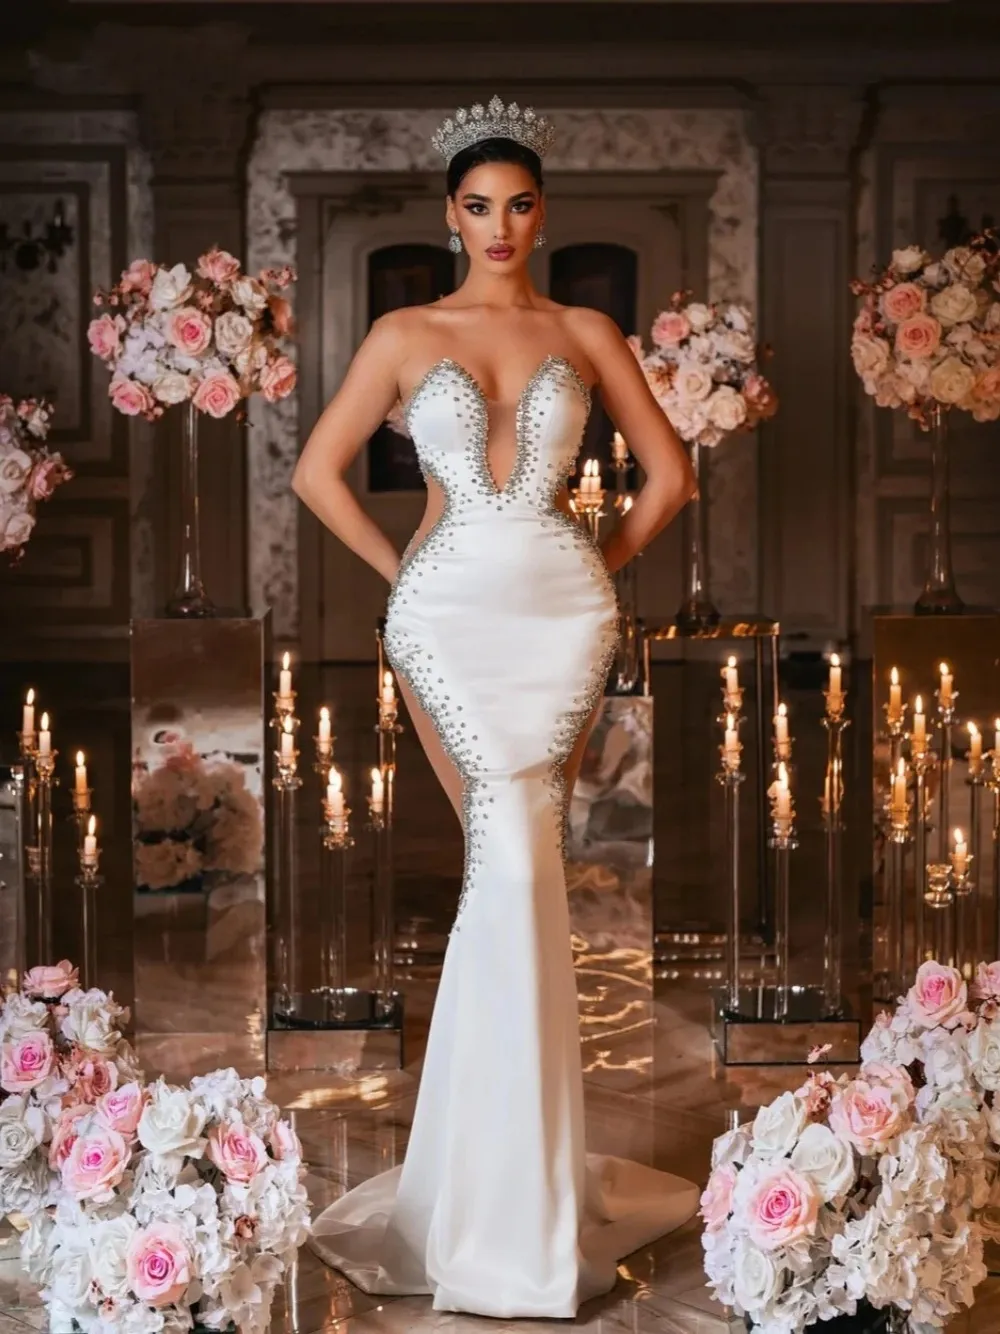 Classic Crystal Mermaid Wedding Dress Strapless Bridal Gowns Sleeveless Deep V Neck Bride Dresses Custom Made Vestido de novia